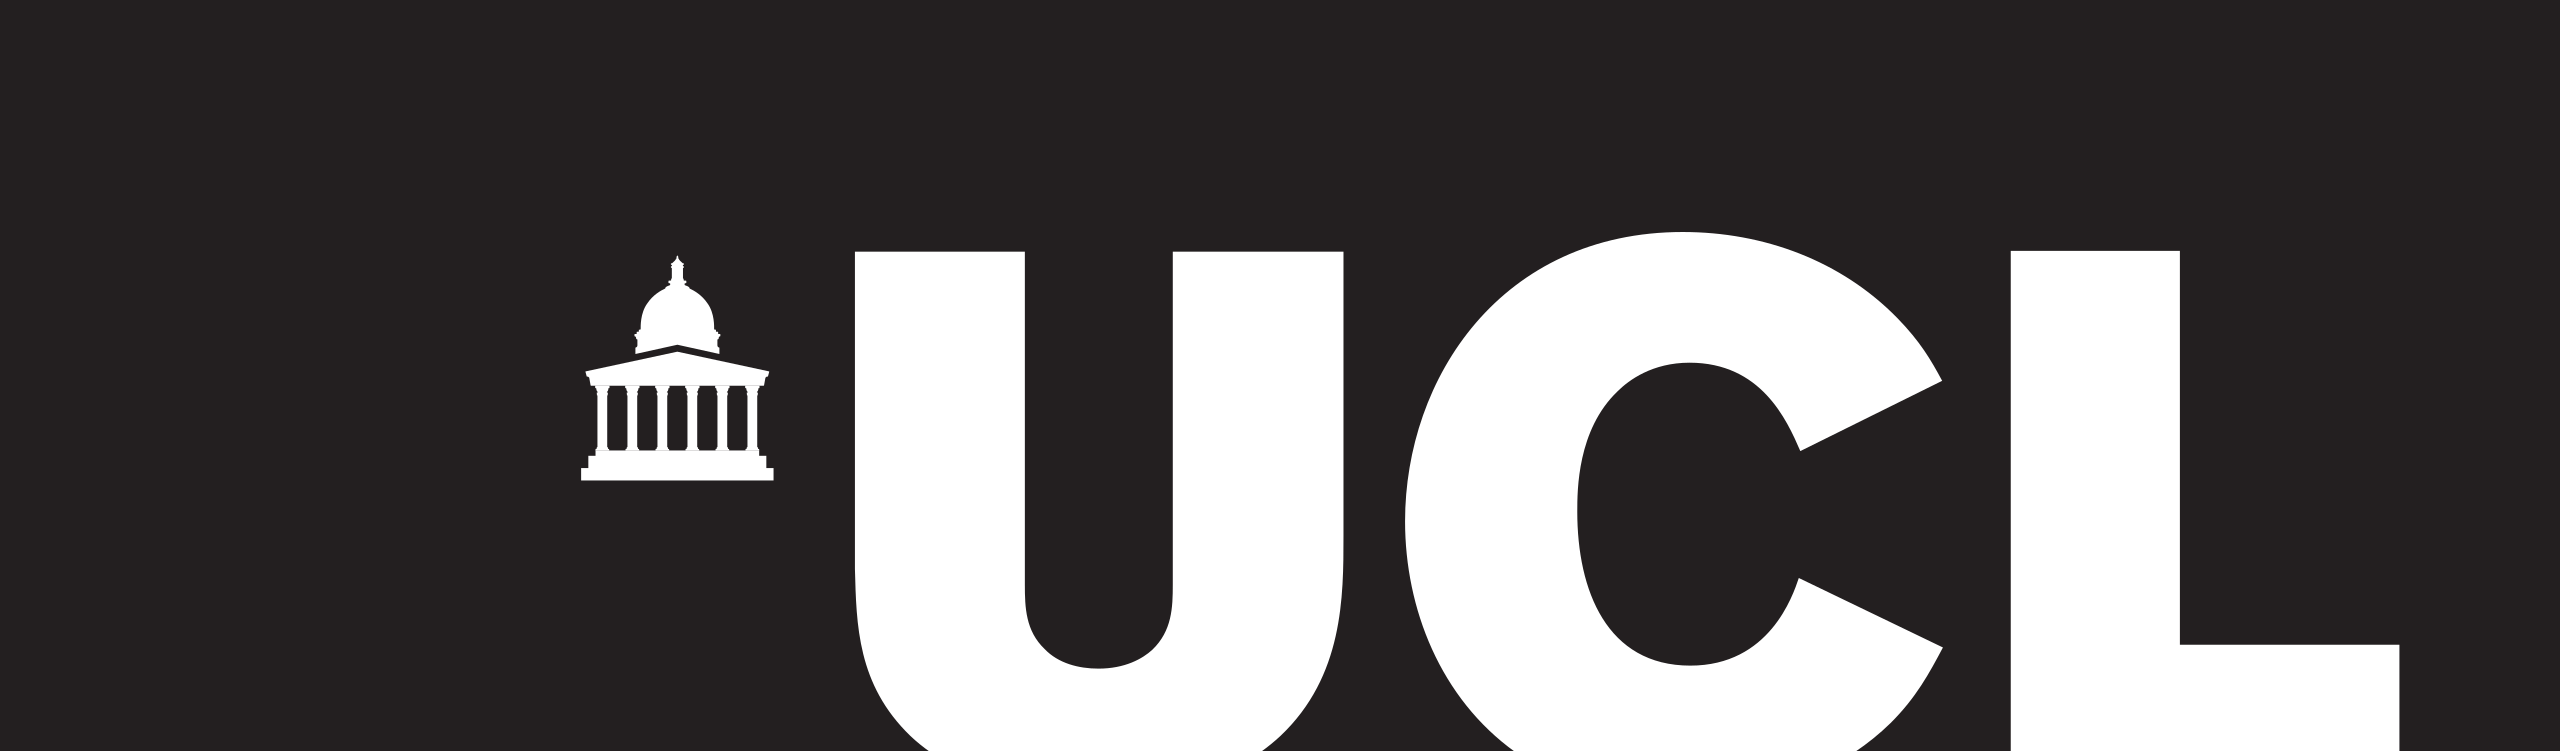 UCL company logo